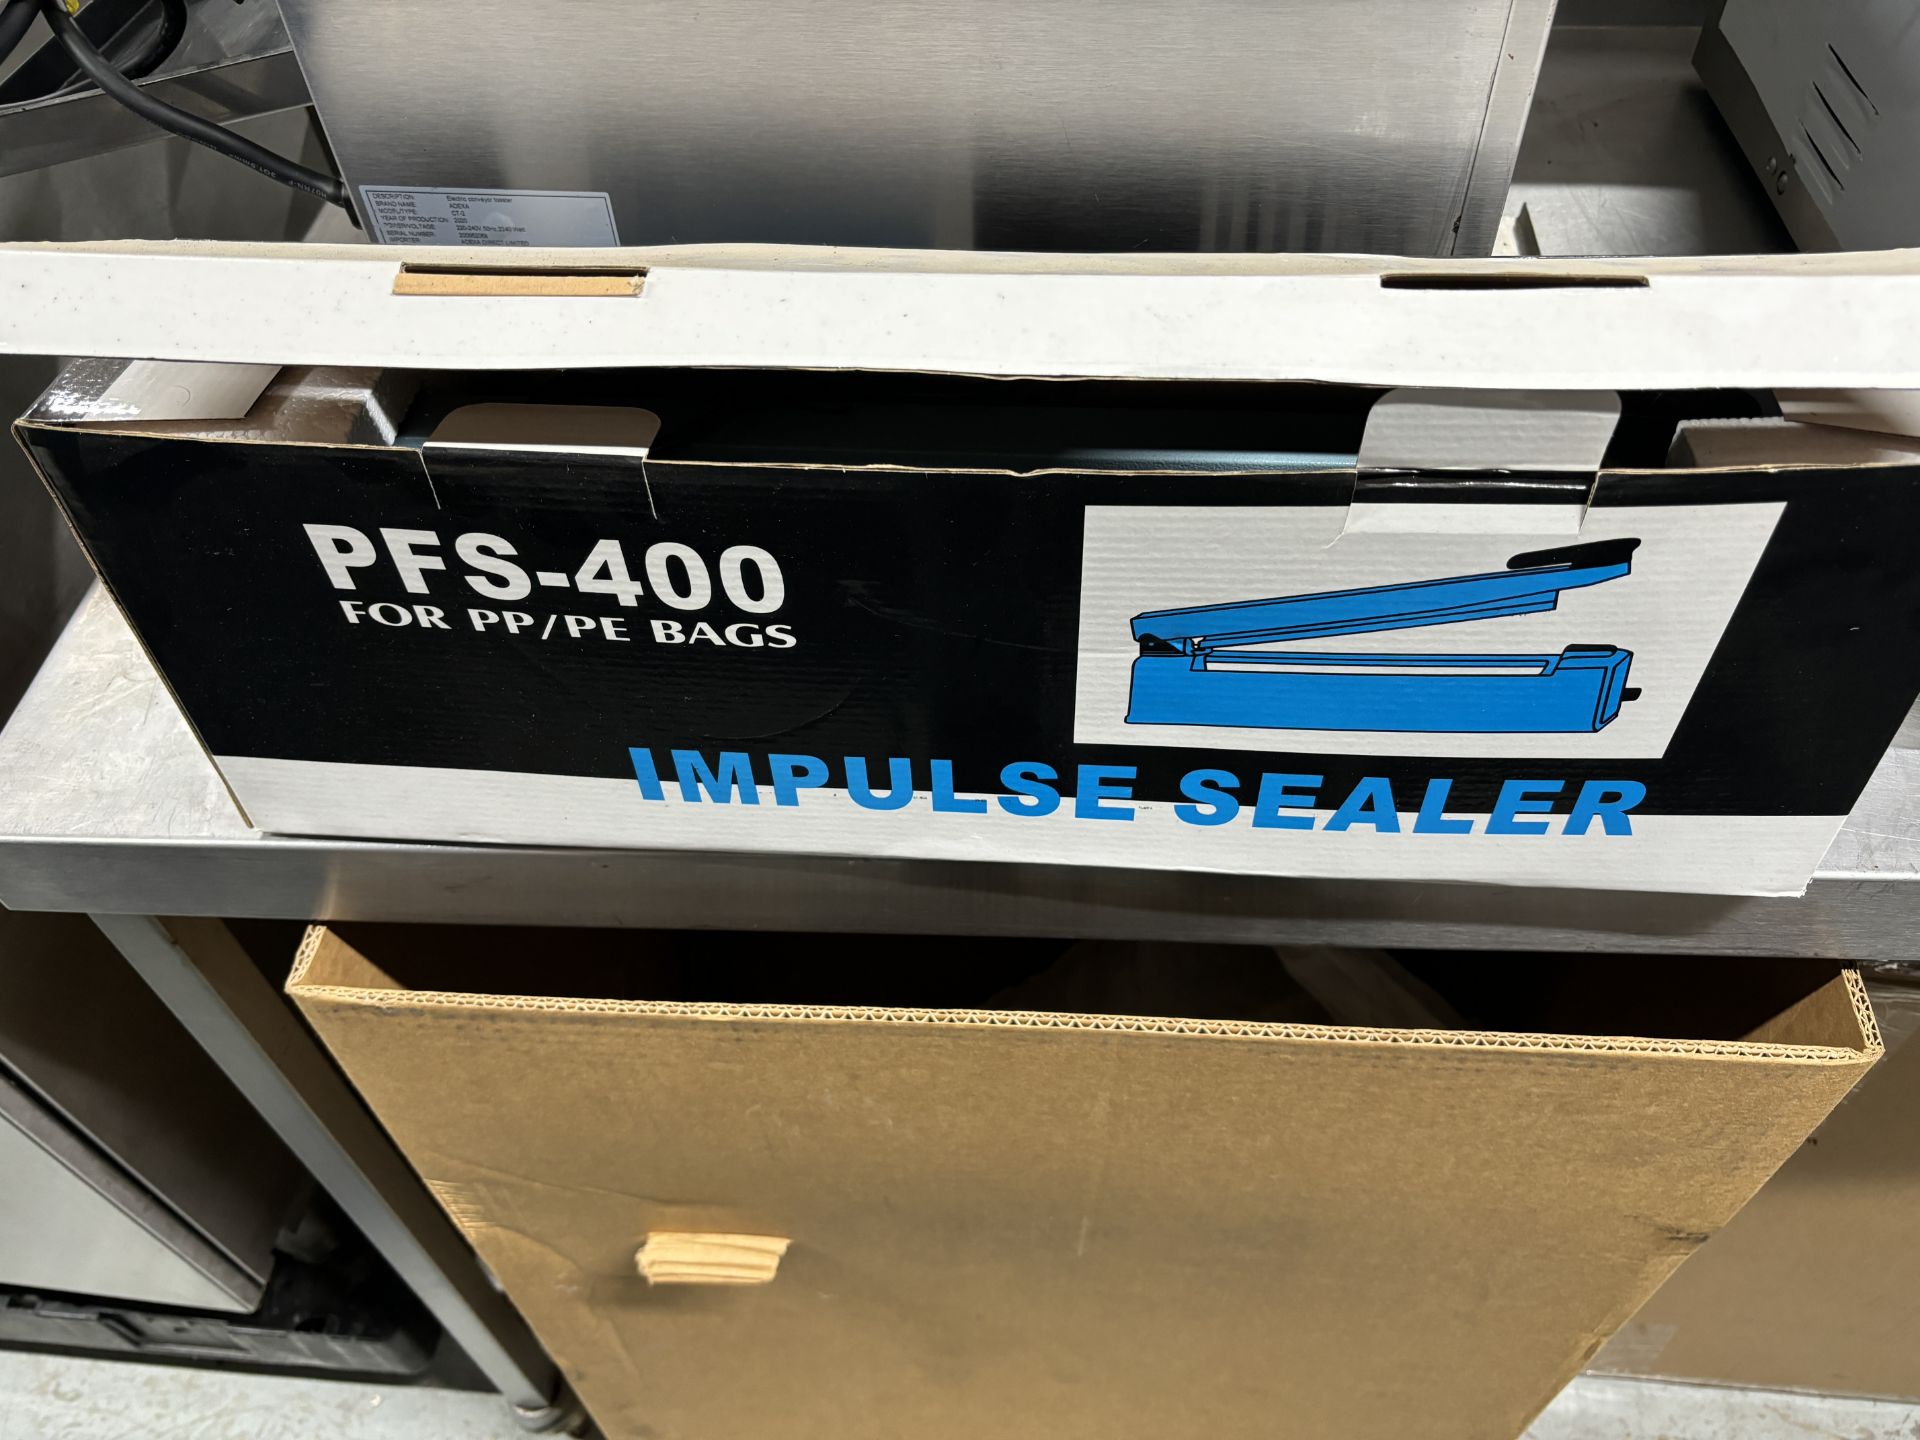 Univac Impulse Sealer New in Box - Image 2 of 3